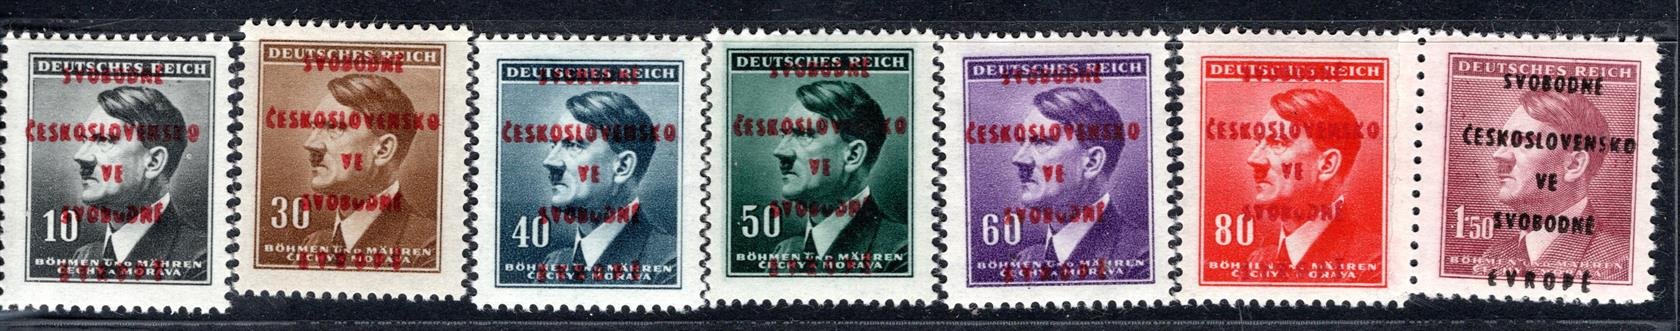 Praha Smíchov - revoluční přetisk na známkách A.H., kompletní řada